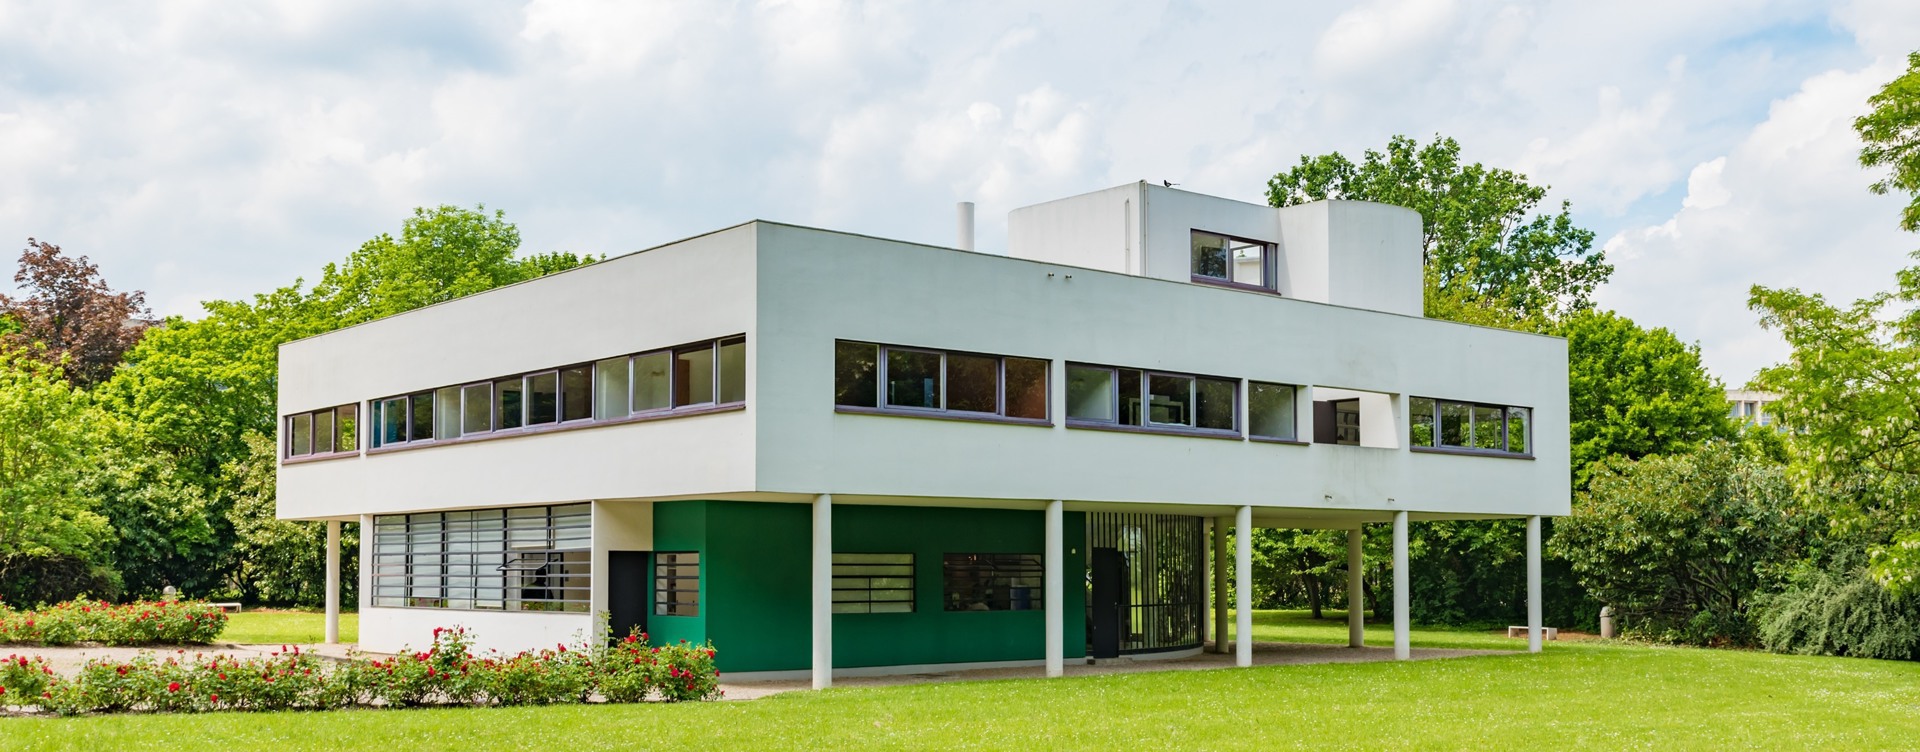 Découvrez les édifices créatifs signés Le Corbusier